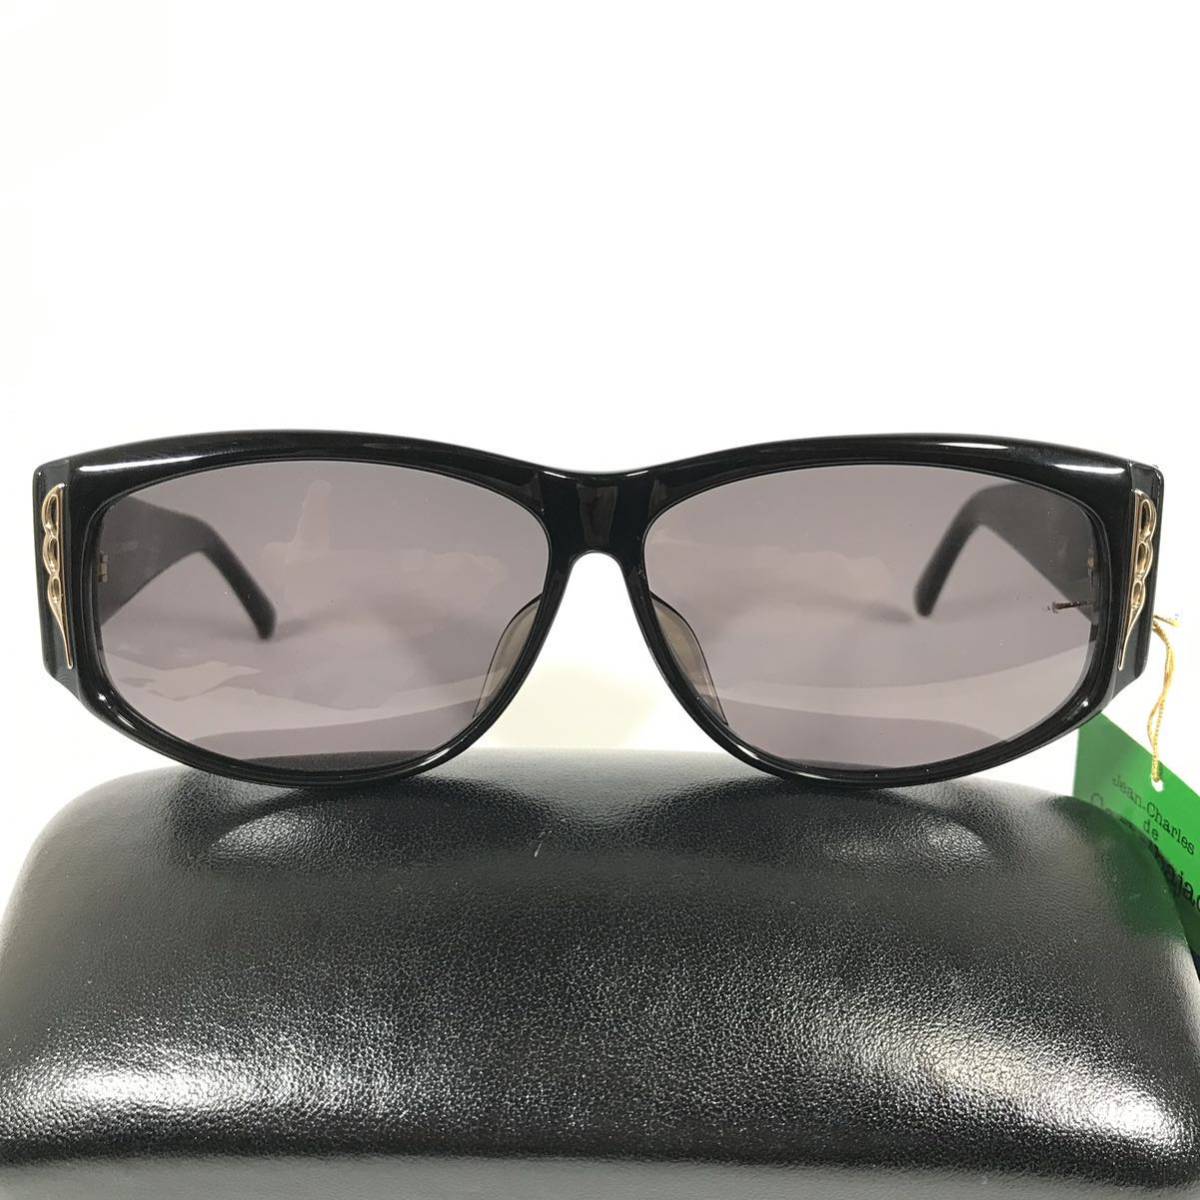  не использовался товар [ Castelbajac ] подлинный товар Castelbajac солнцезащитные очки JC Logo 9003 серый цвет серия × чёрный мужской женский обычная цена 2.8 десять тысяч иен стоимость доставки 520 иен 2